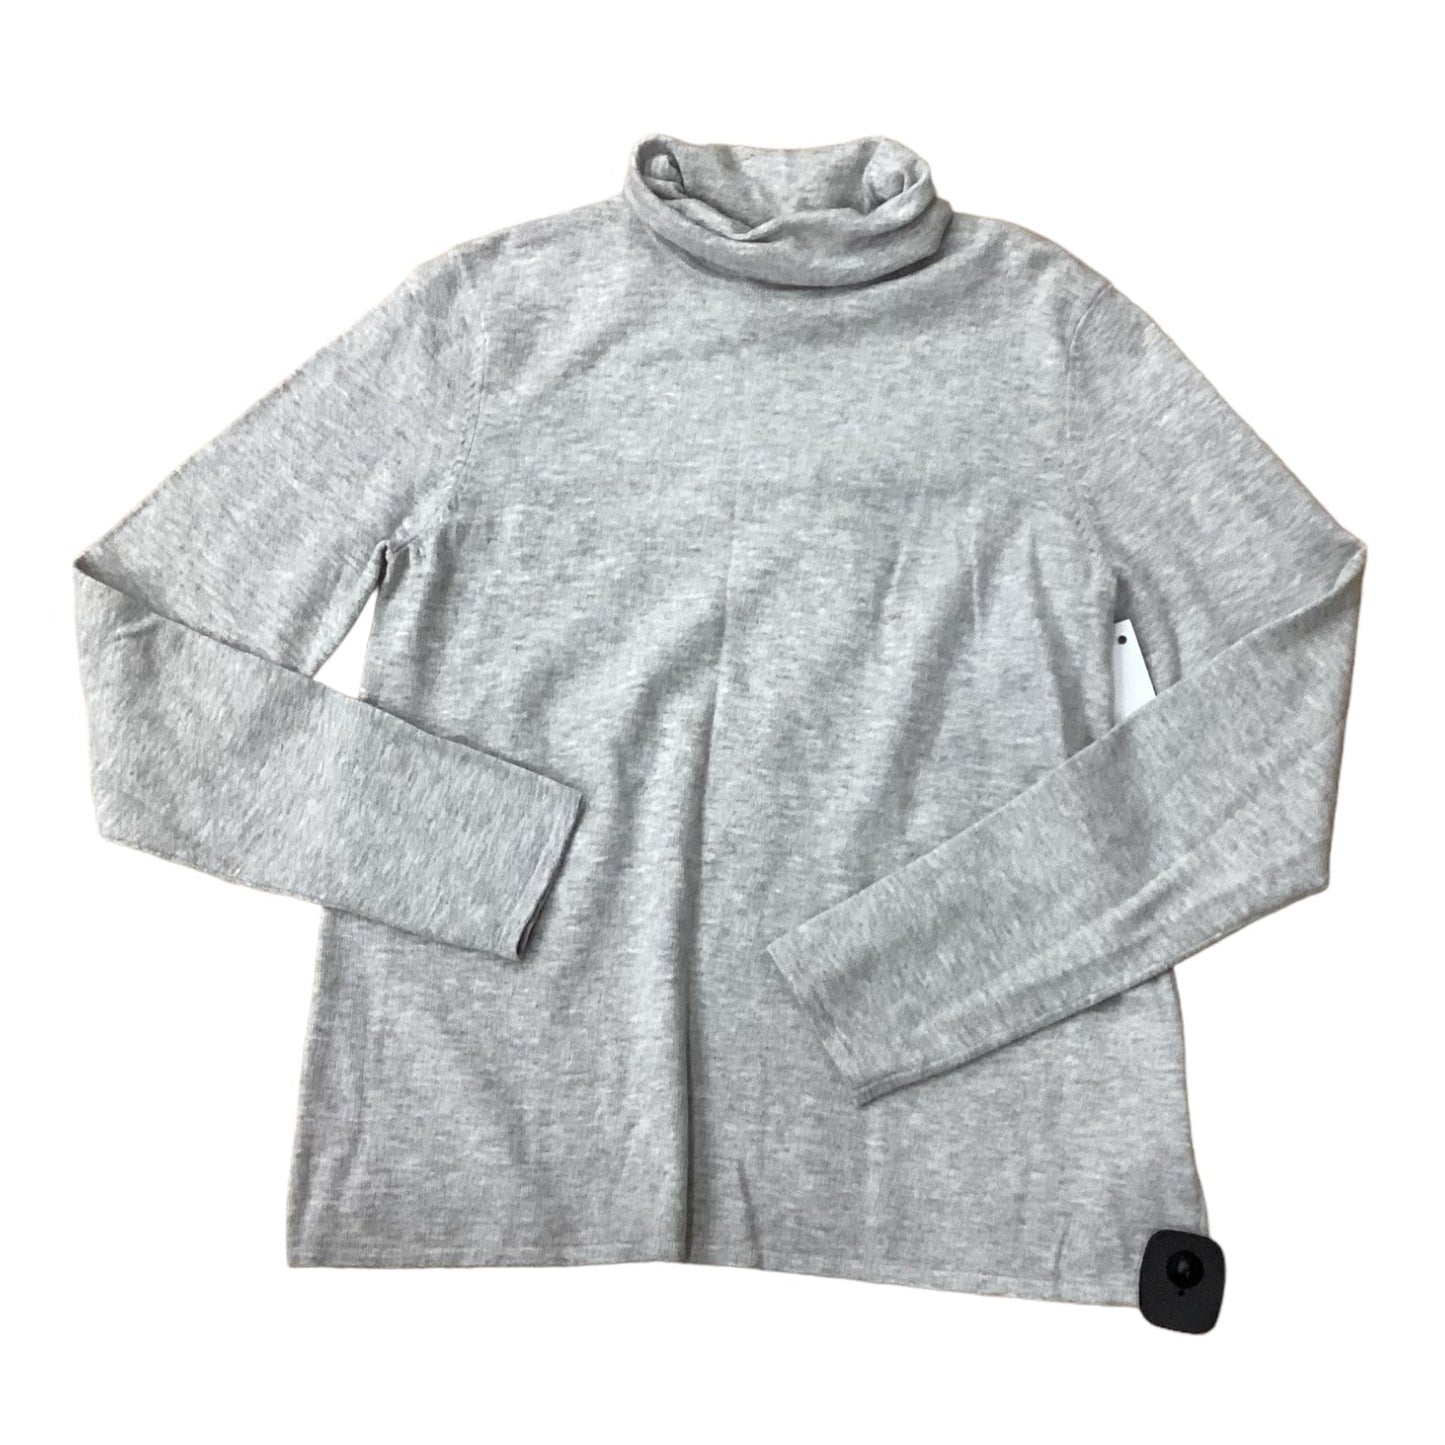 Grey Sweater Designer Eileen Fisher, Size M